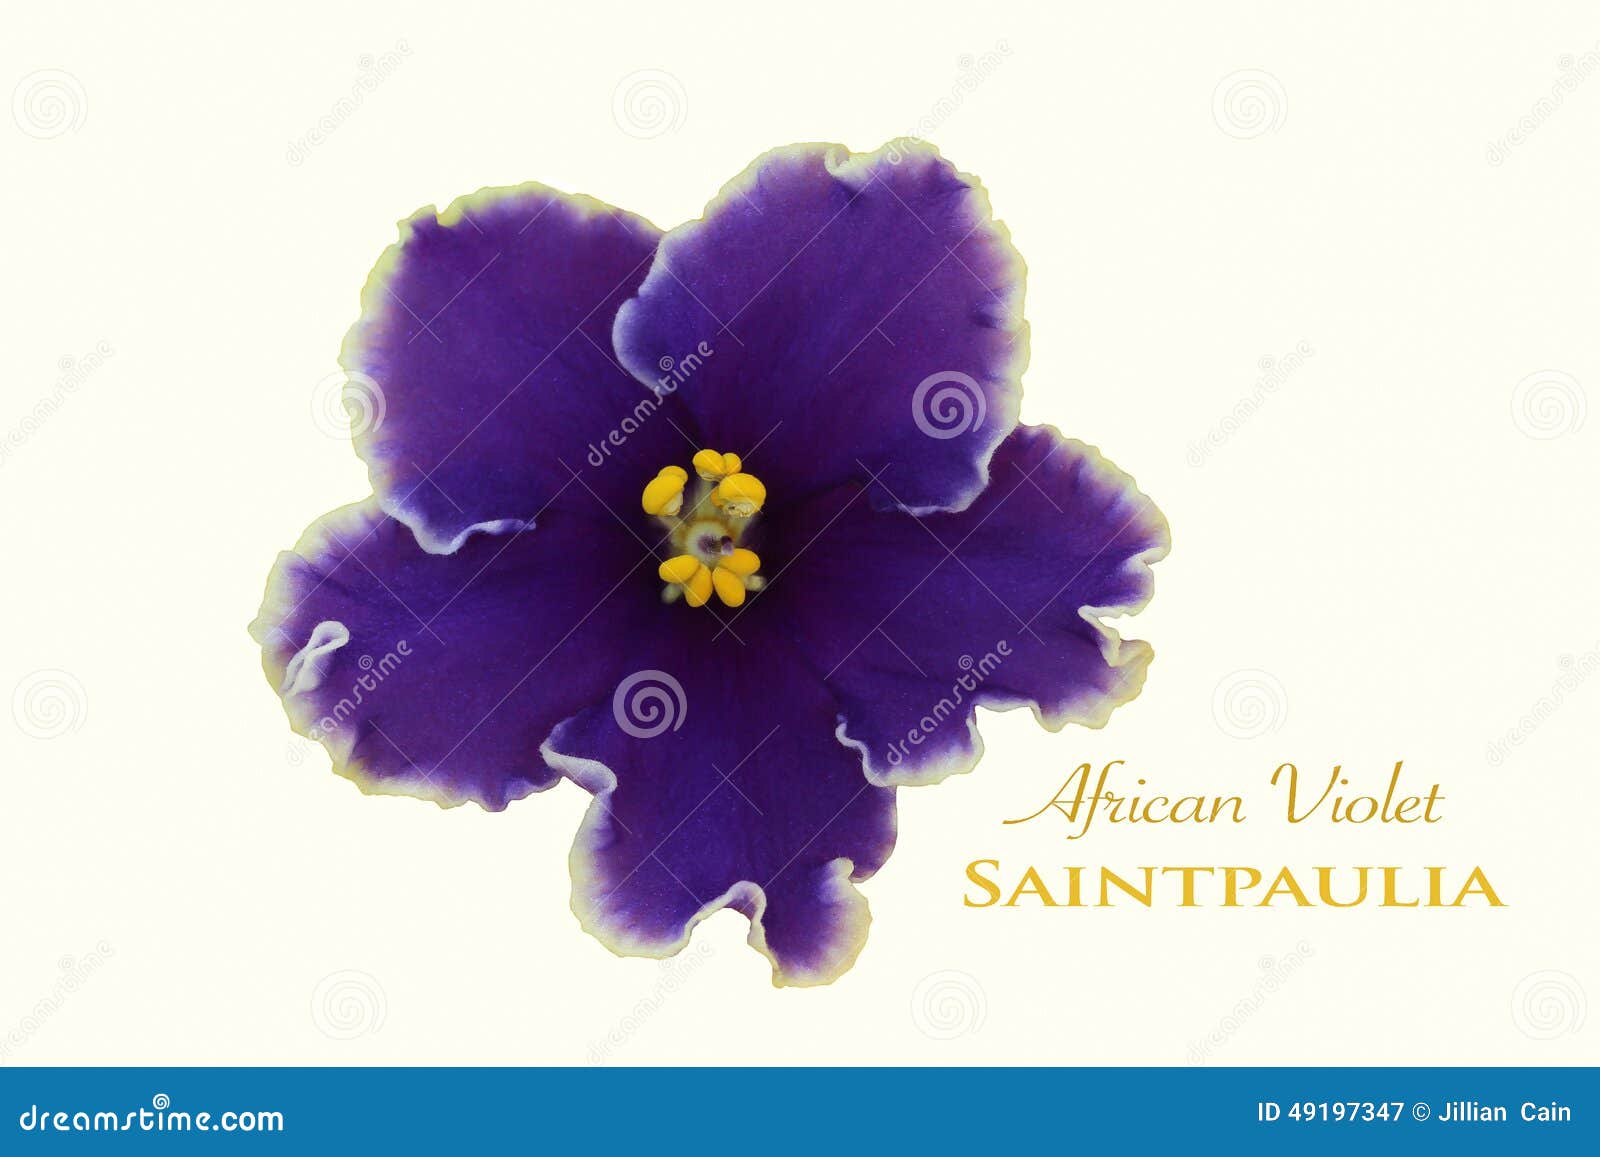  african violet flower